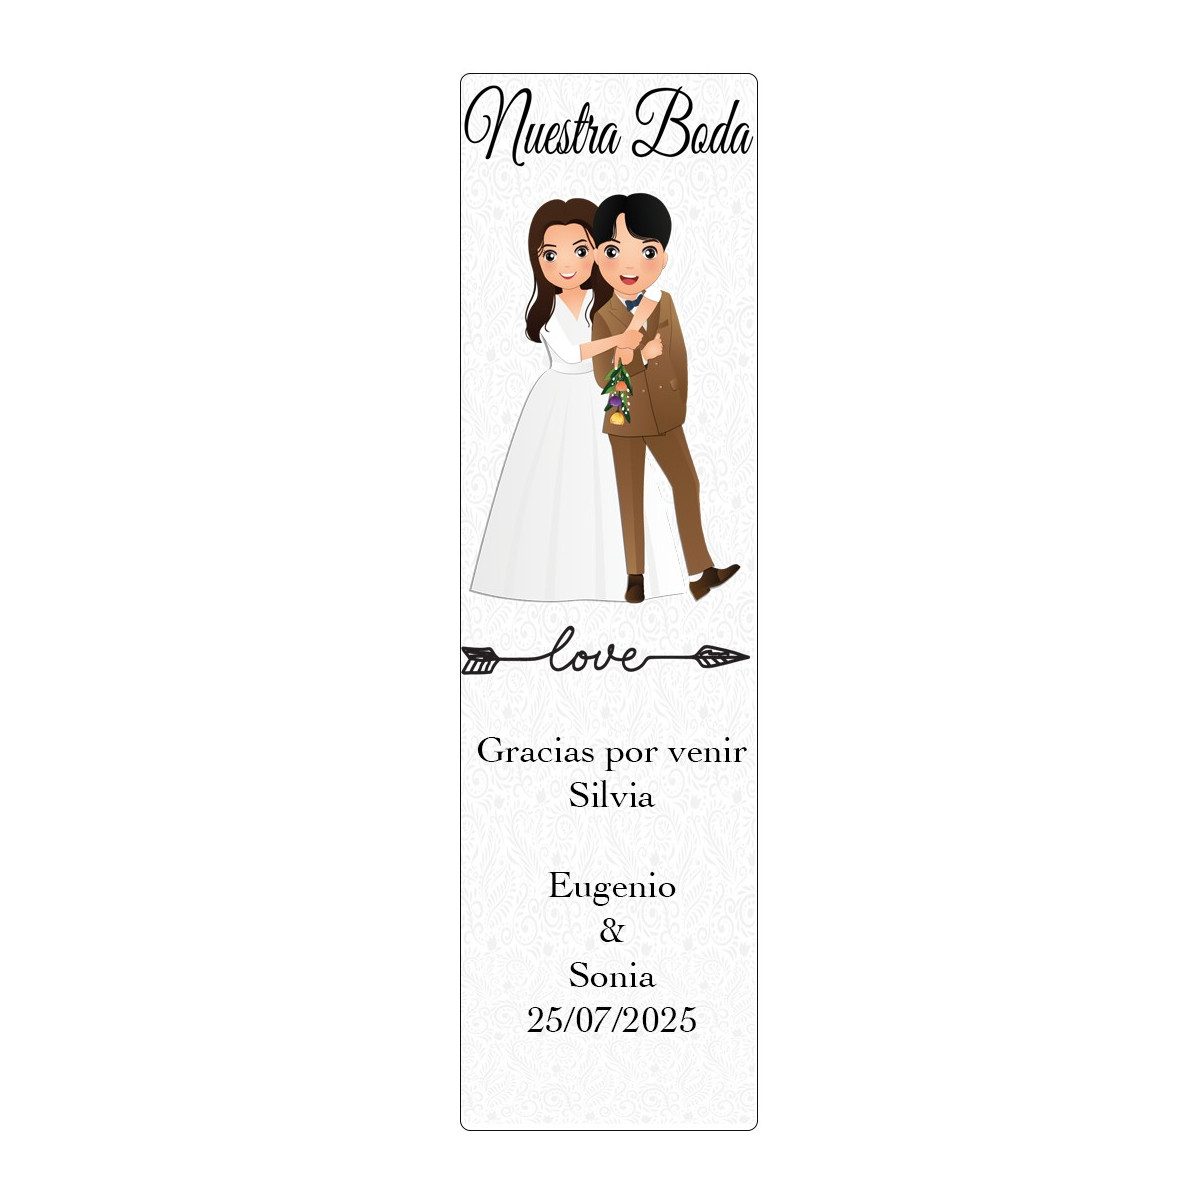 Marque-pages personnalisés et design original pour annoncer un mariage